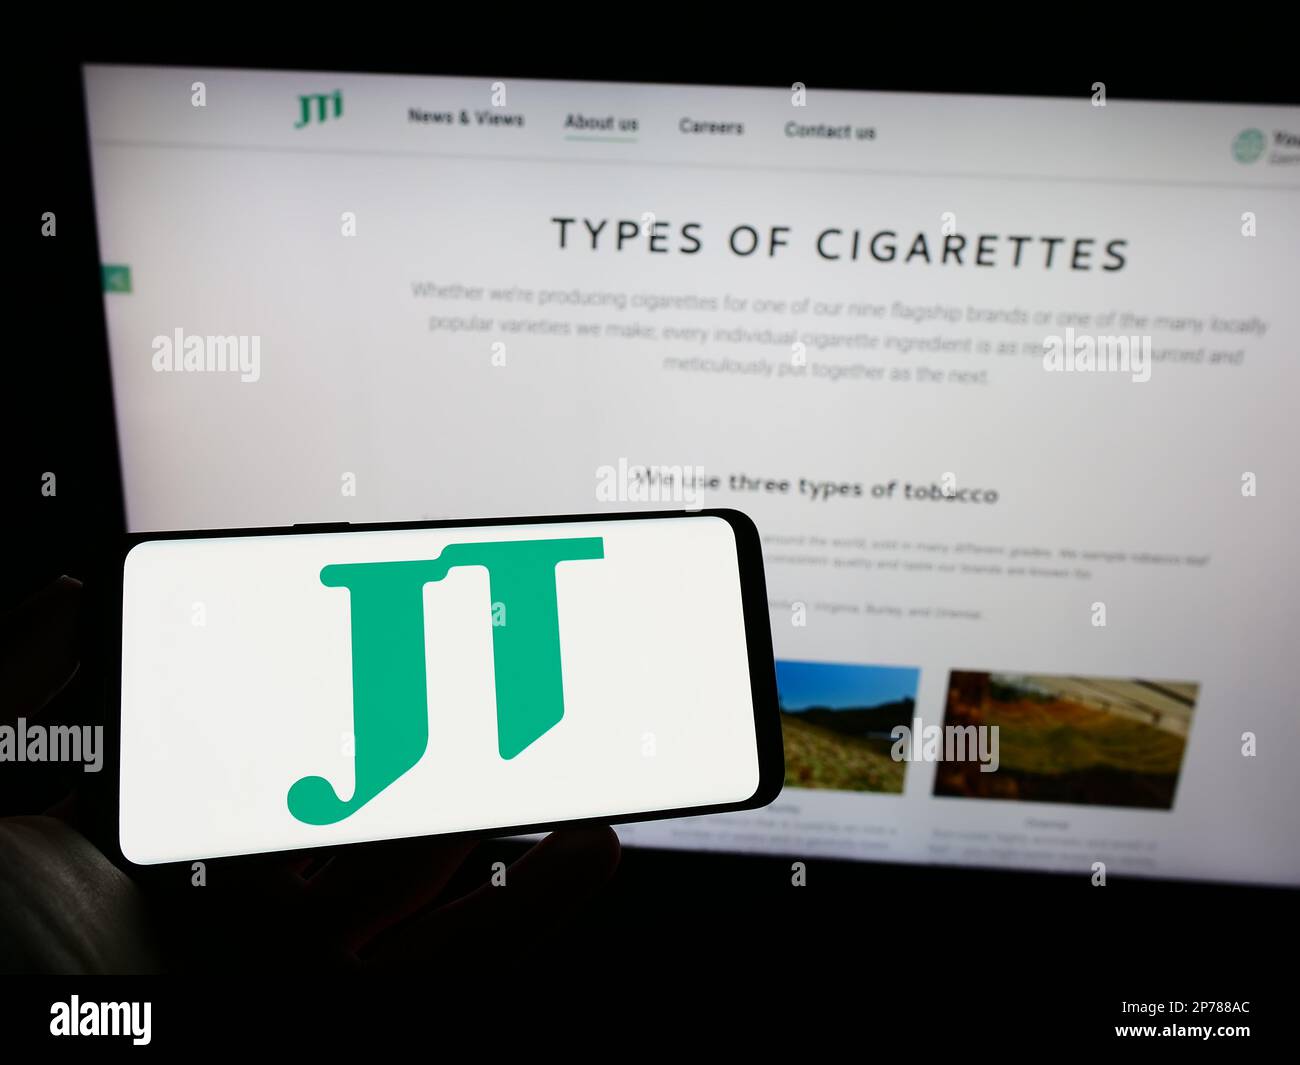 Personne tenant un téléphone cellulaire avec le logo de la compagnie de cigarettes Japan Tobacco Inc (JT) à l'écran en face de la page Web d'entreprise. Mise au point sur l'affichage du téléphone. Banque D'Images